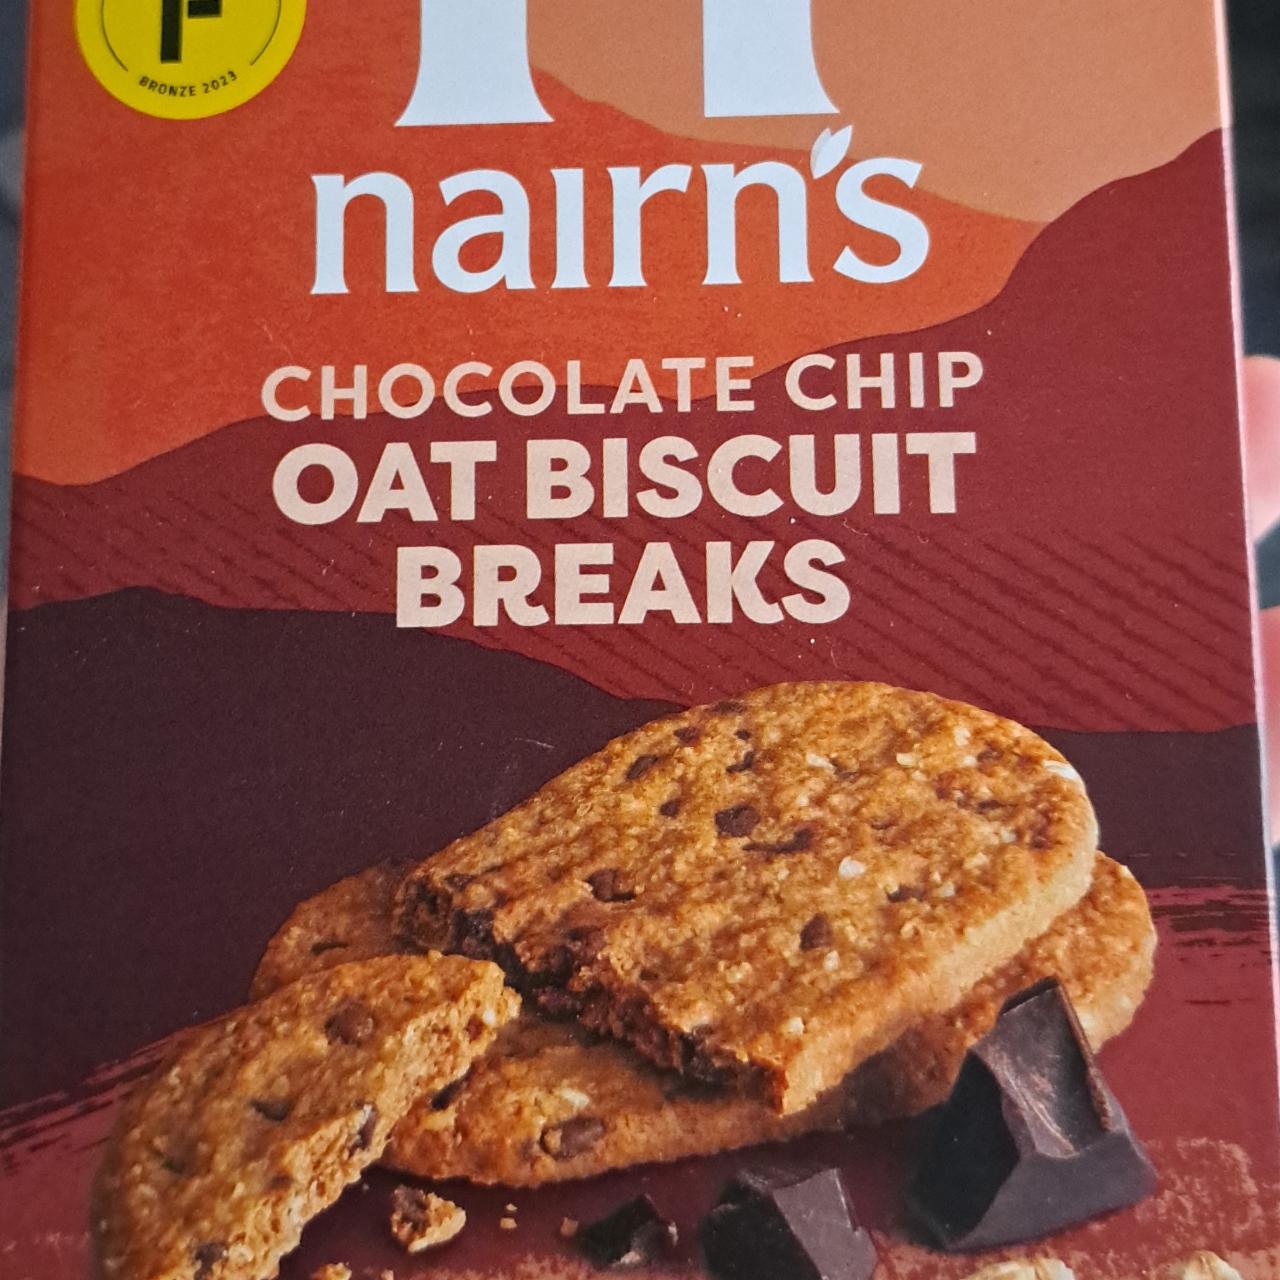 Képek - Chocolate chip oat biscuit breaks Nairn's